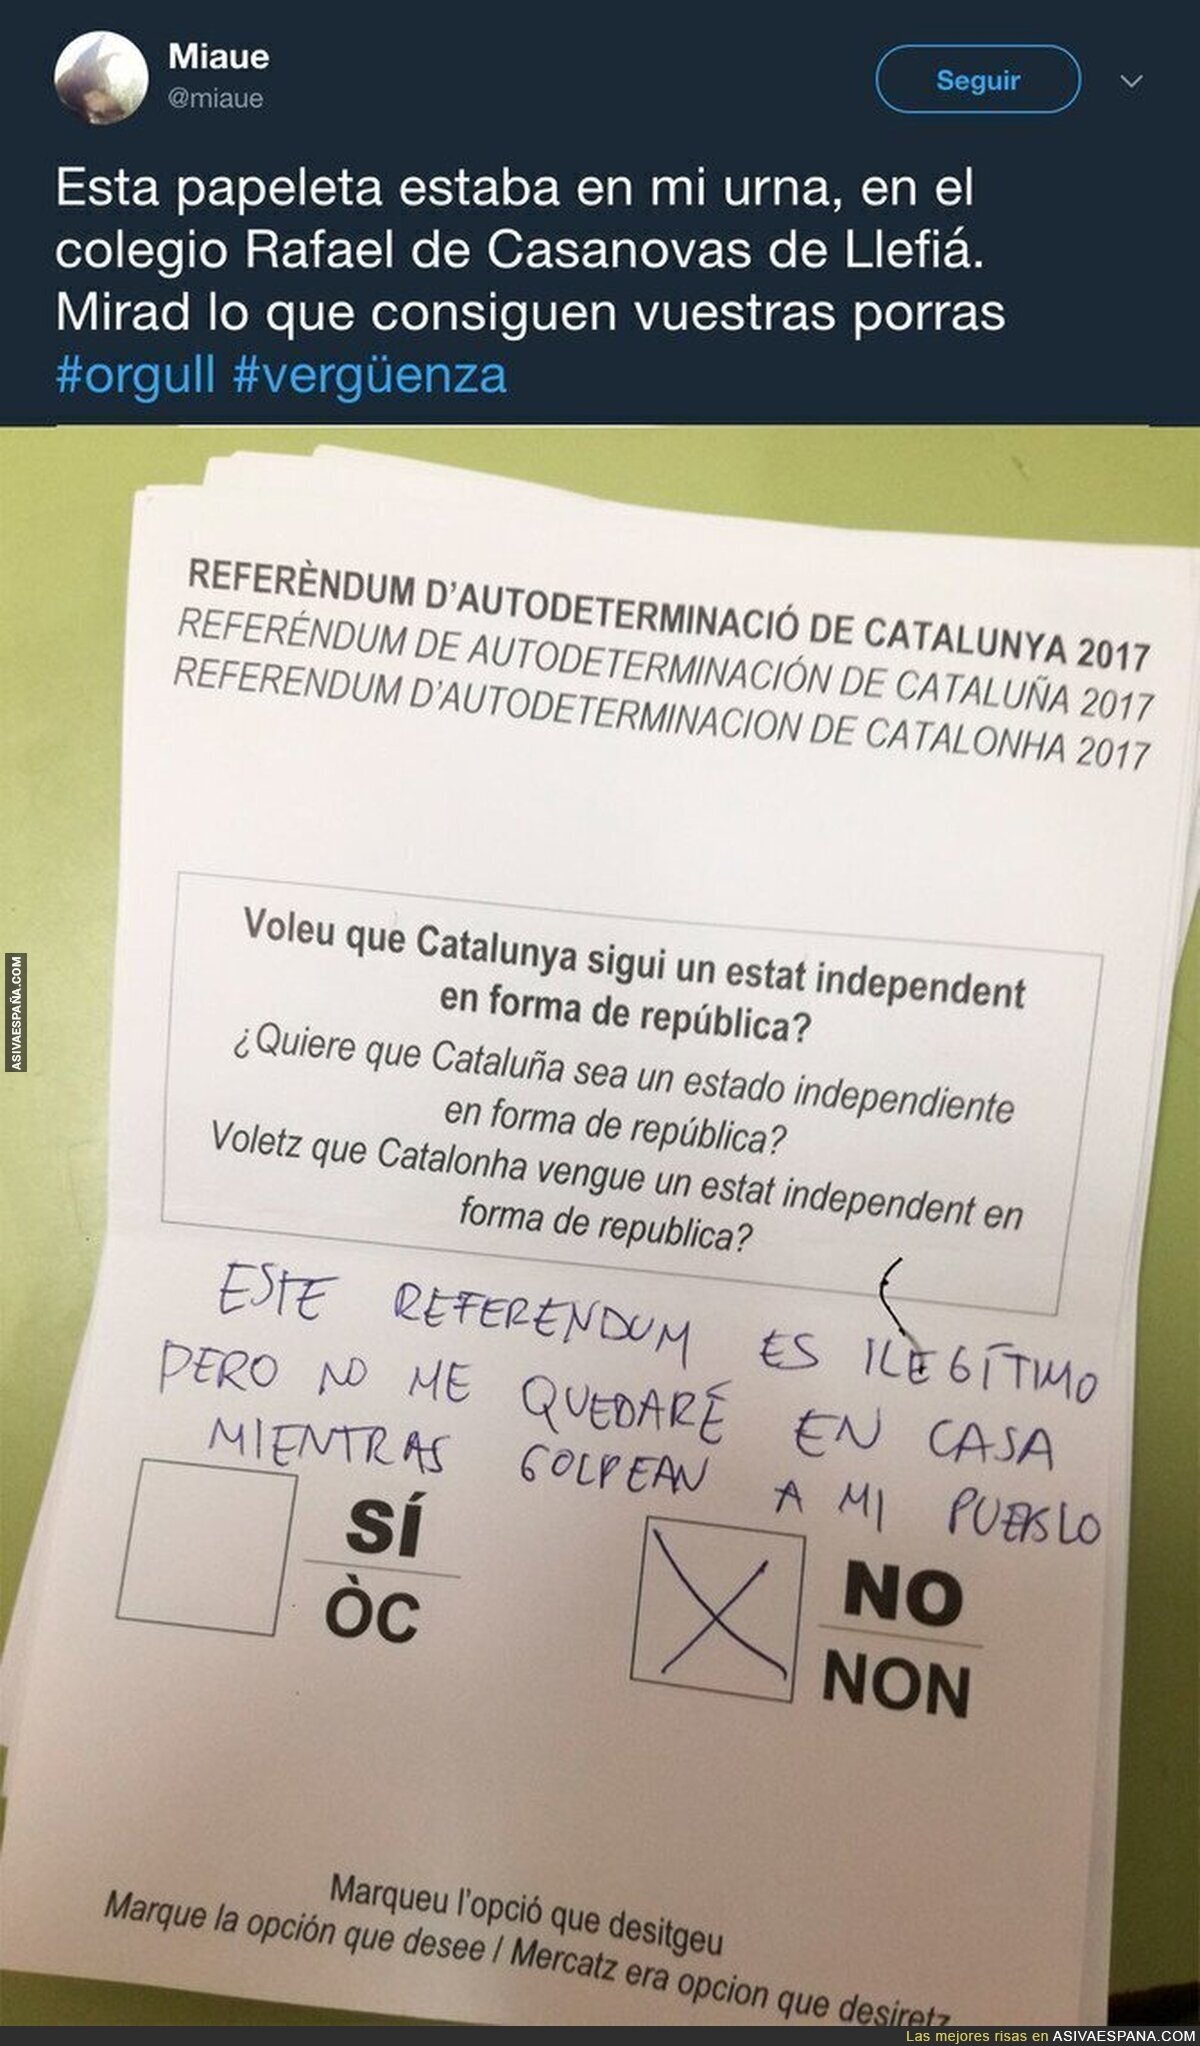 El emocionante mensaje de una persona que fue a votar 'No' al referéndum